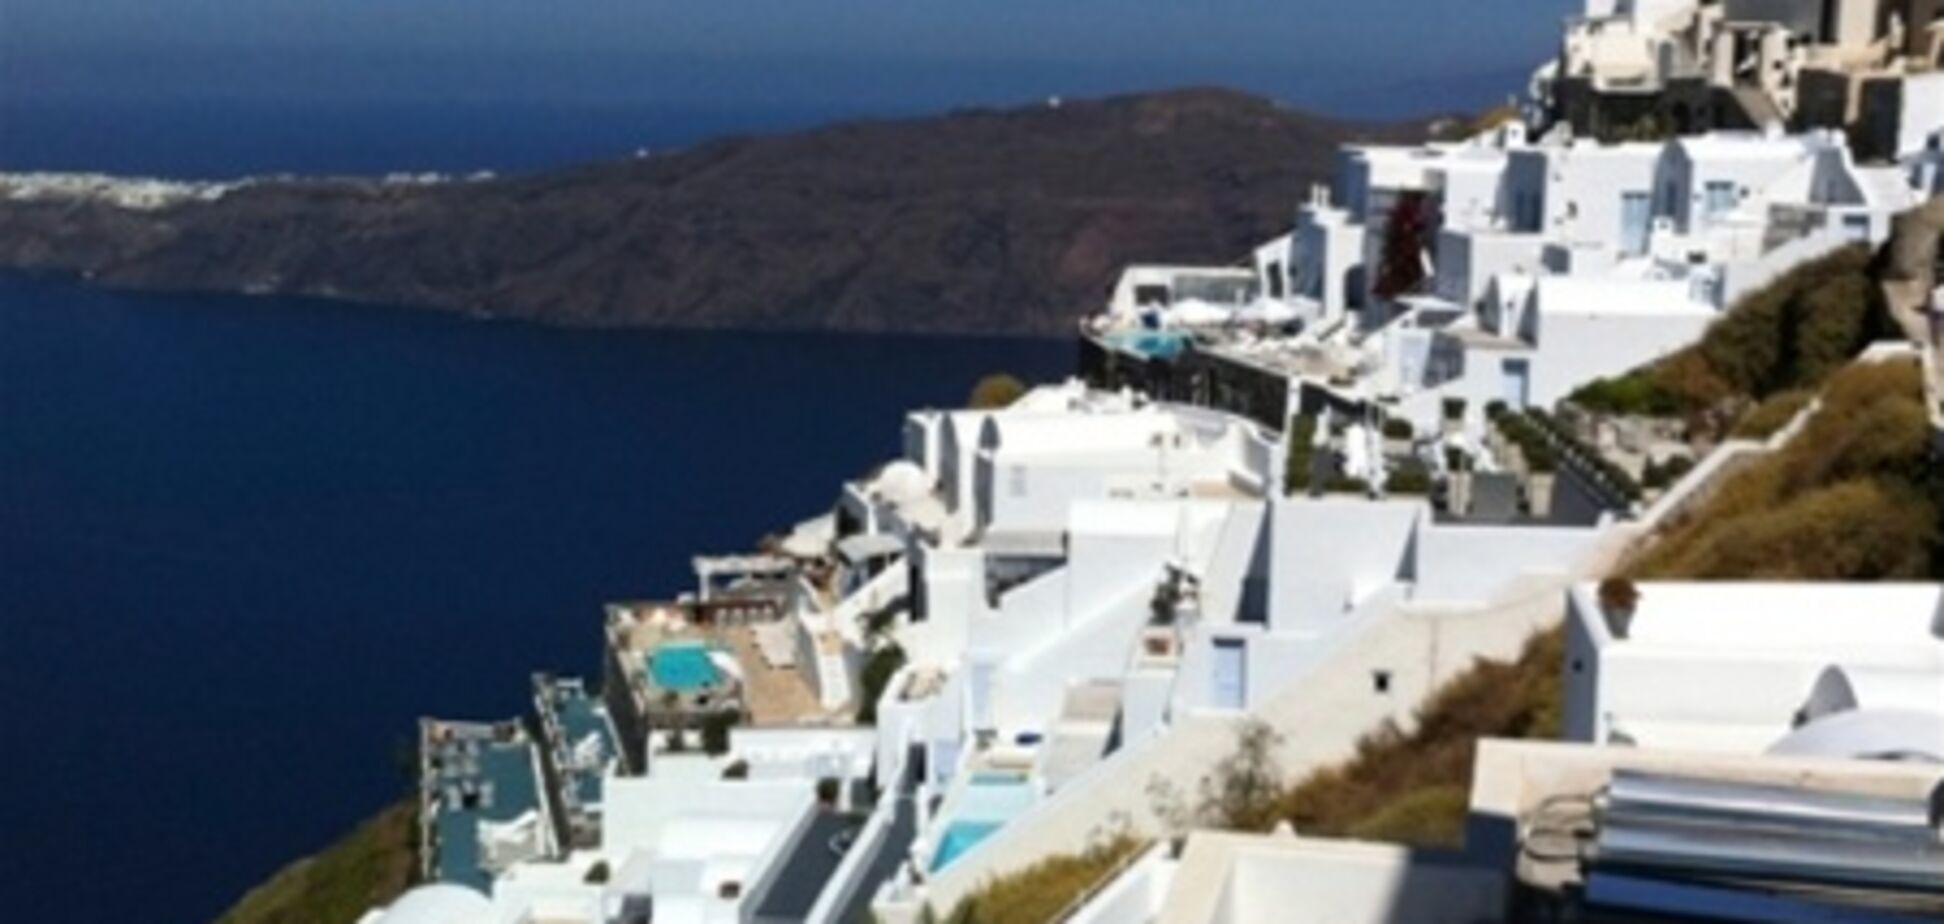 Из-за обиды на правительство греческий остров намерен присоединиться к Австрии